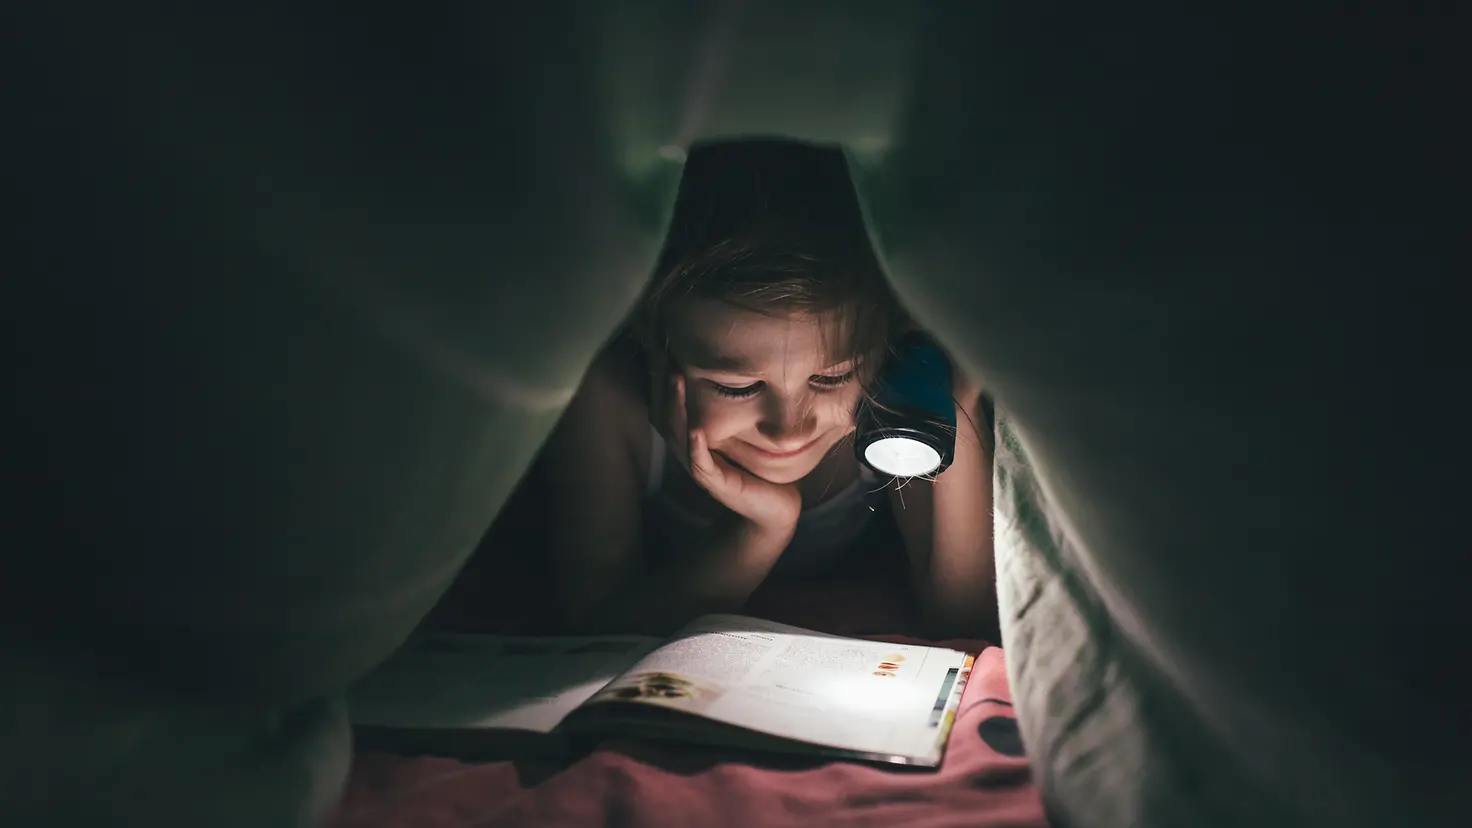 Ein Mädchen liegt im Dunkeln unter seiner Bettdecke und liest ein Buch, welches es mit einer Taschenlampe anstrahlt.chenlampe auf ein Buch